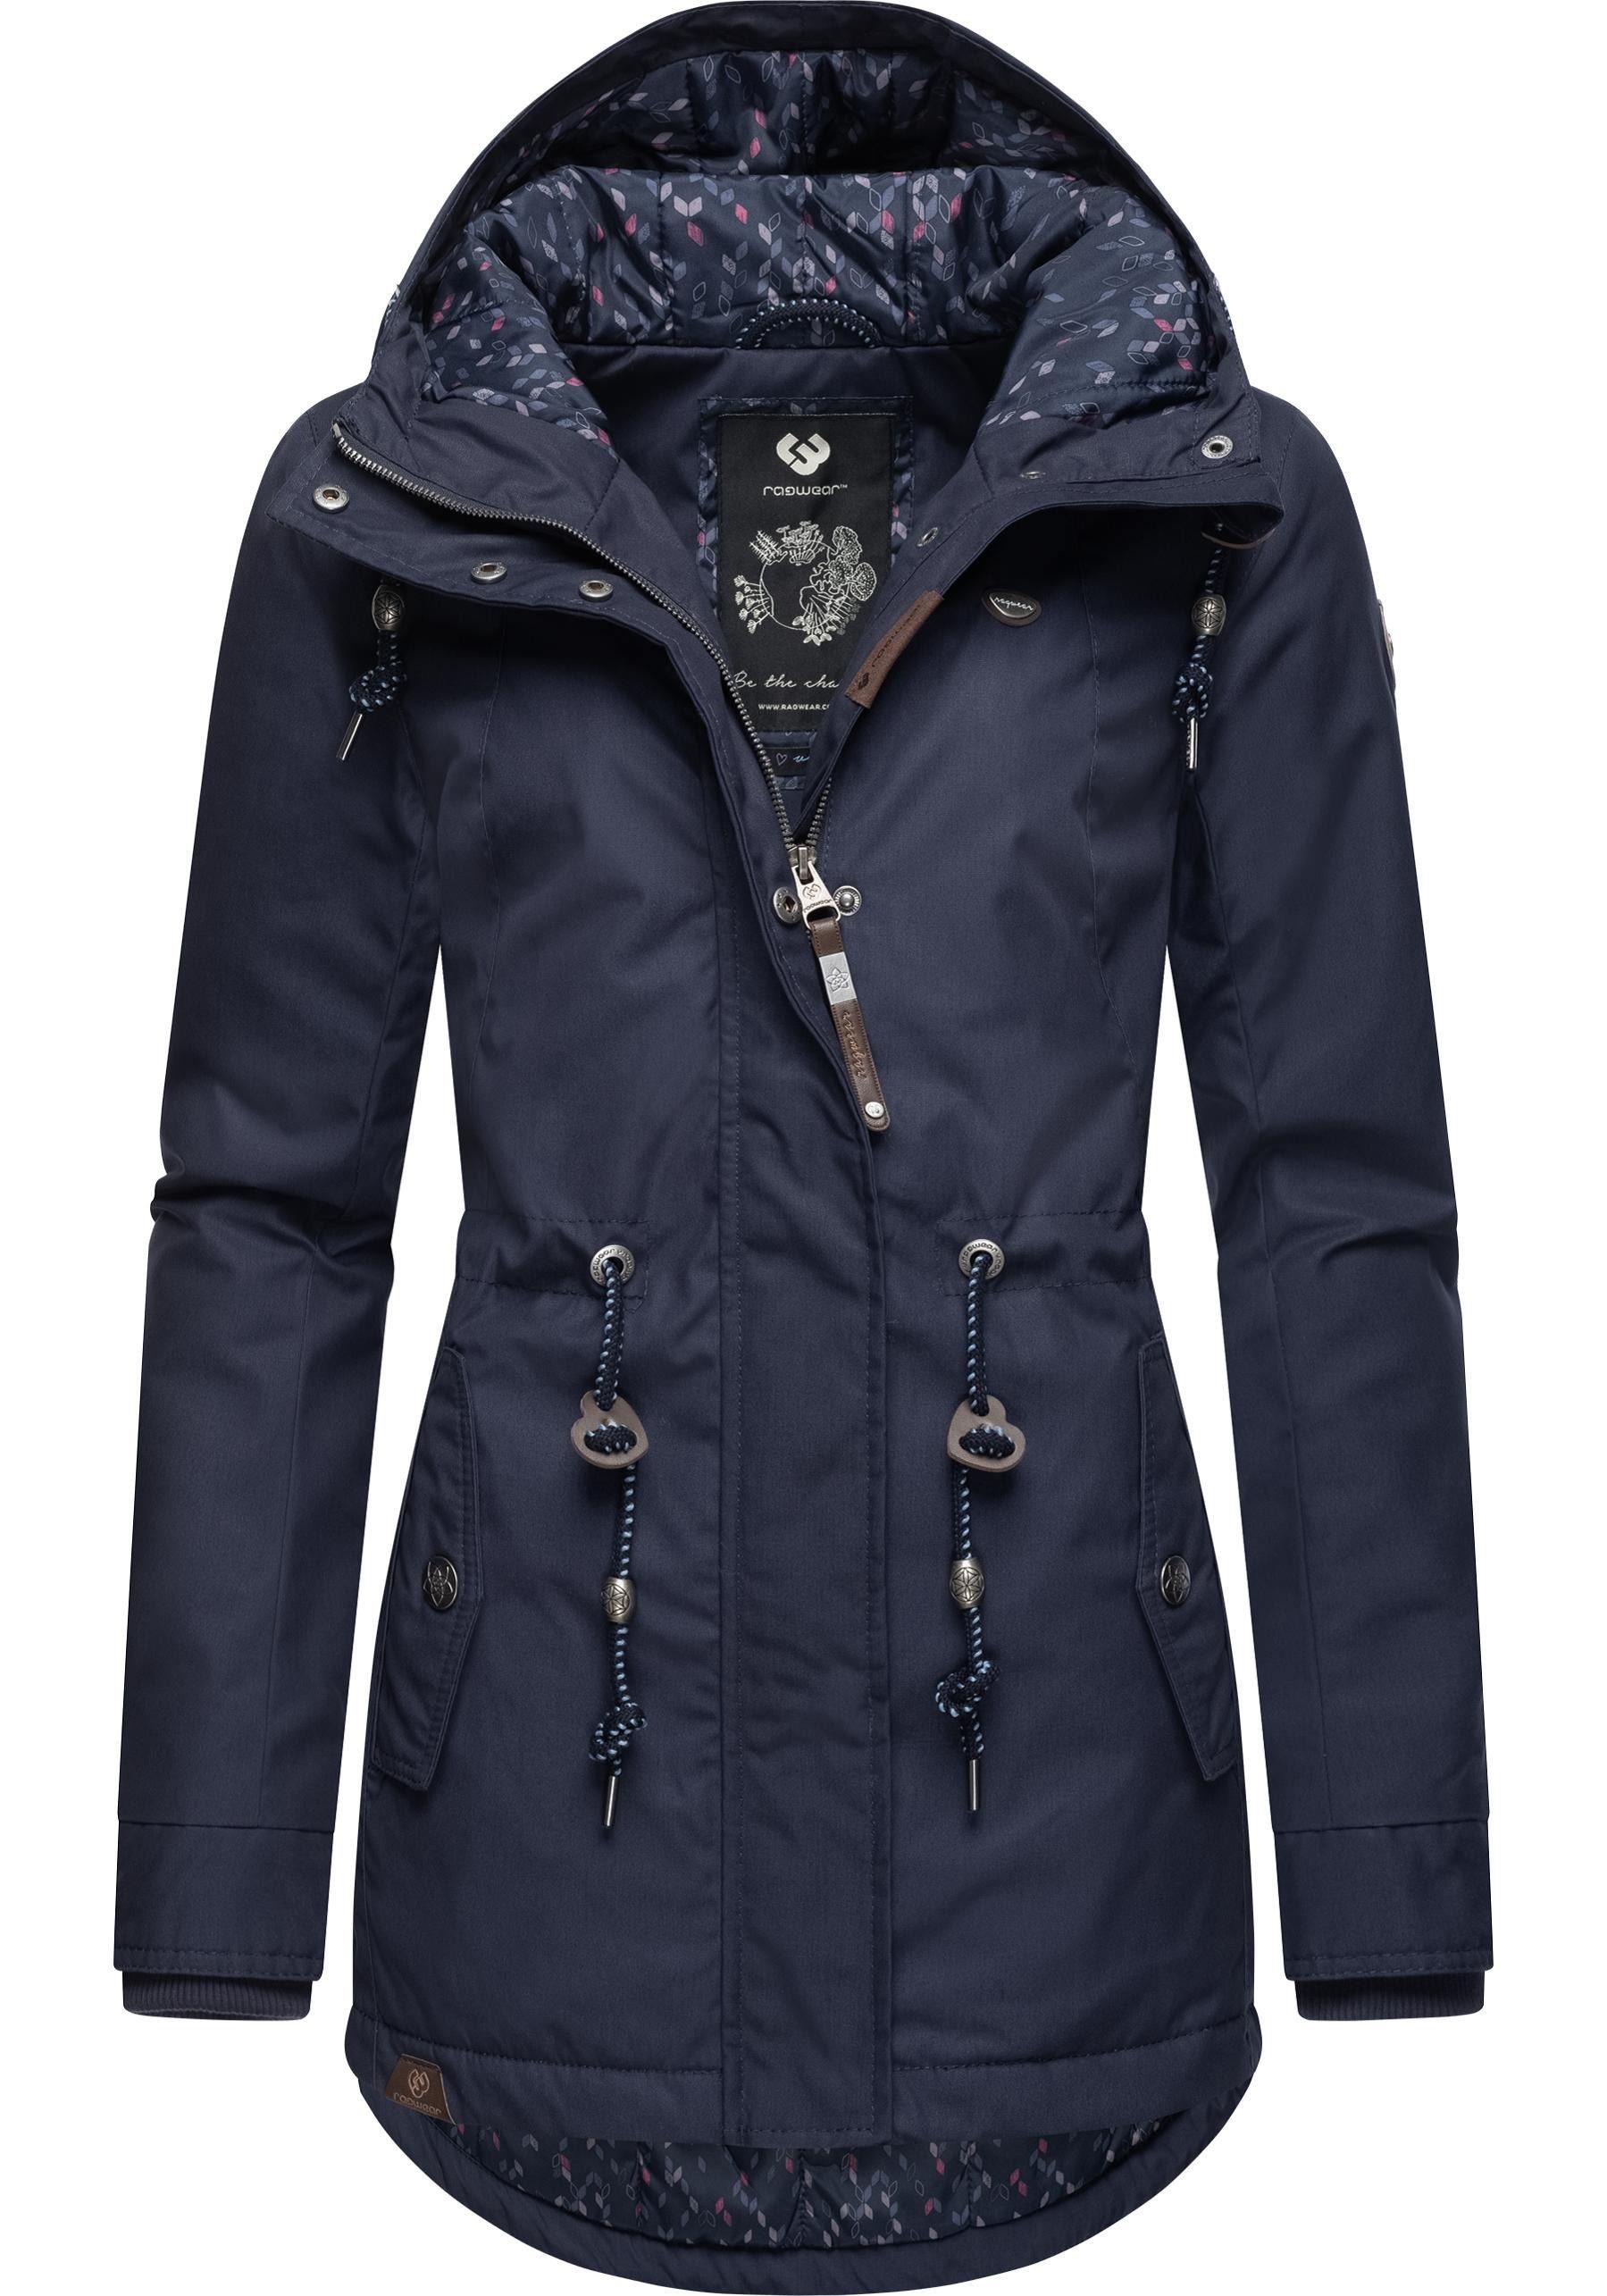 Ragwear Winterjacke Monadis Black Label stylischer Winterparka für die kalte Jahreszeit graublau